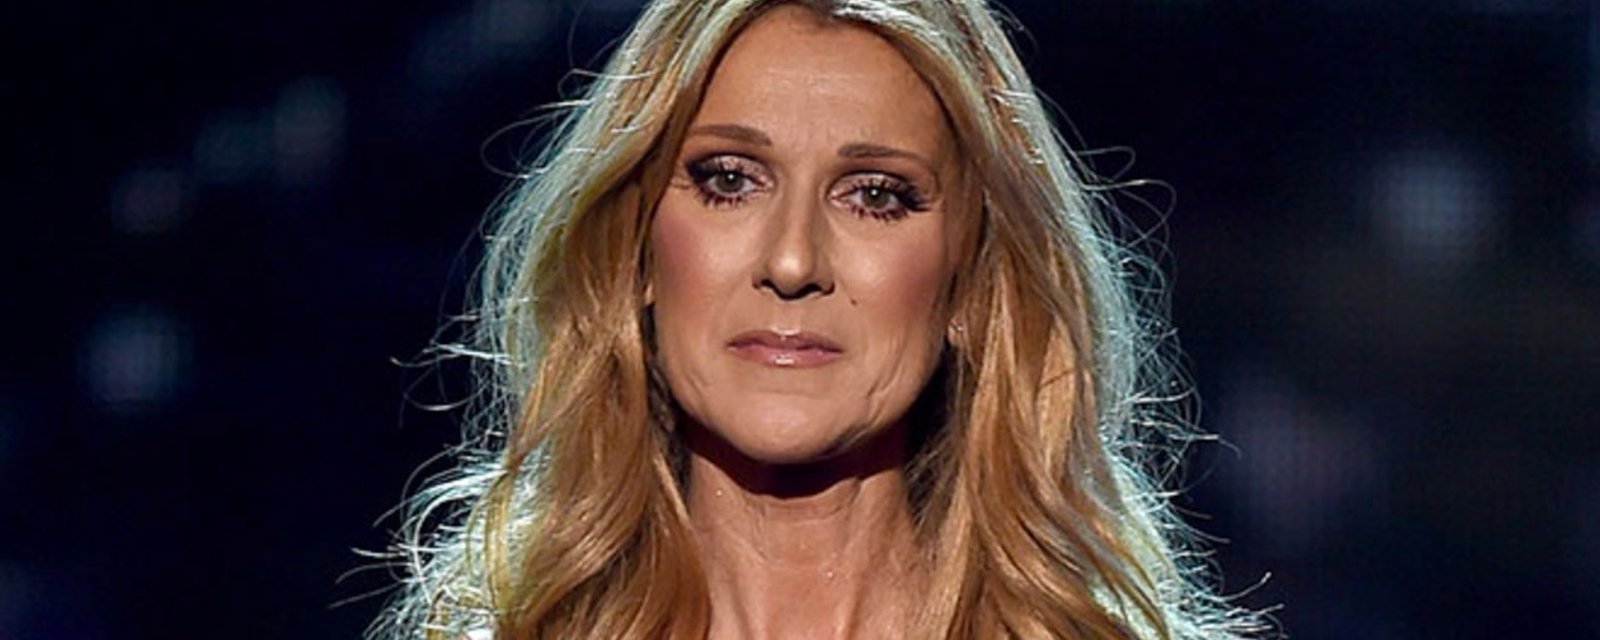 La nouvelle robe de Céline Dion vole la vedette... Pour les mauvaises raisons! 